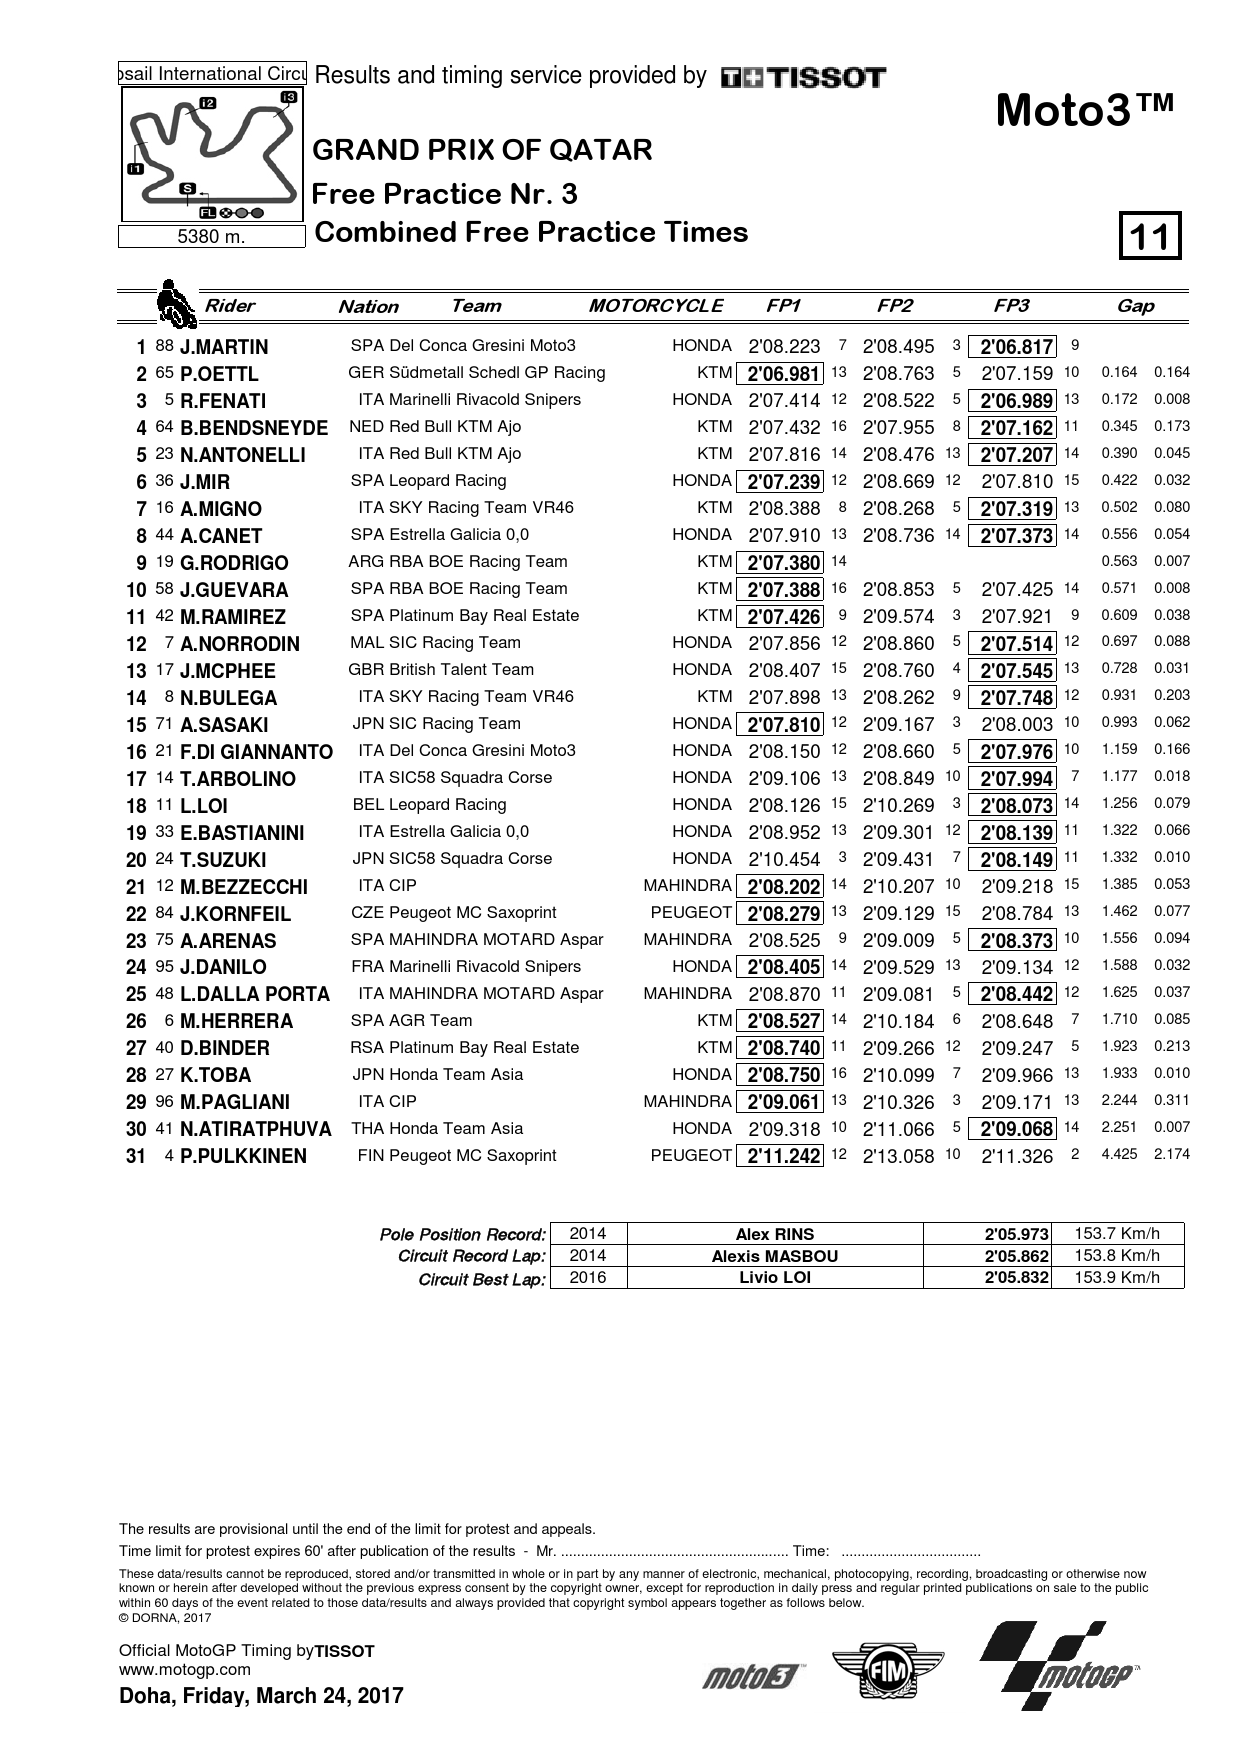 Объединенные результаты FP1, FP2 и FP3 Гран-При Катара, класс Moto3